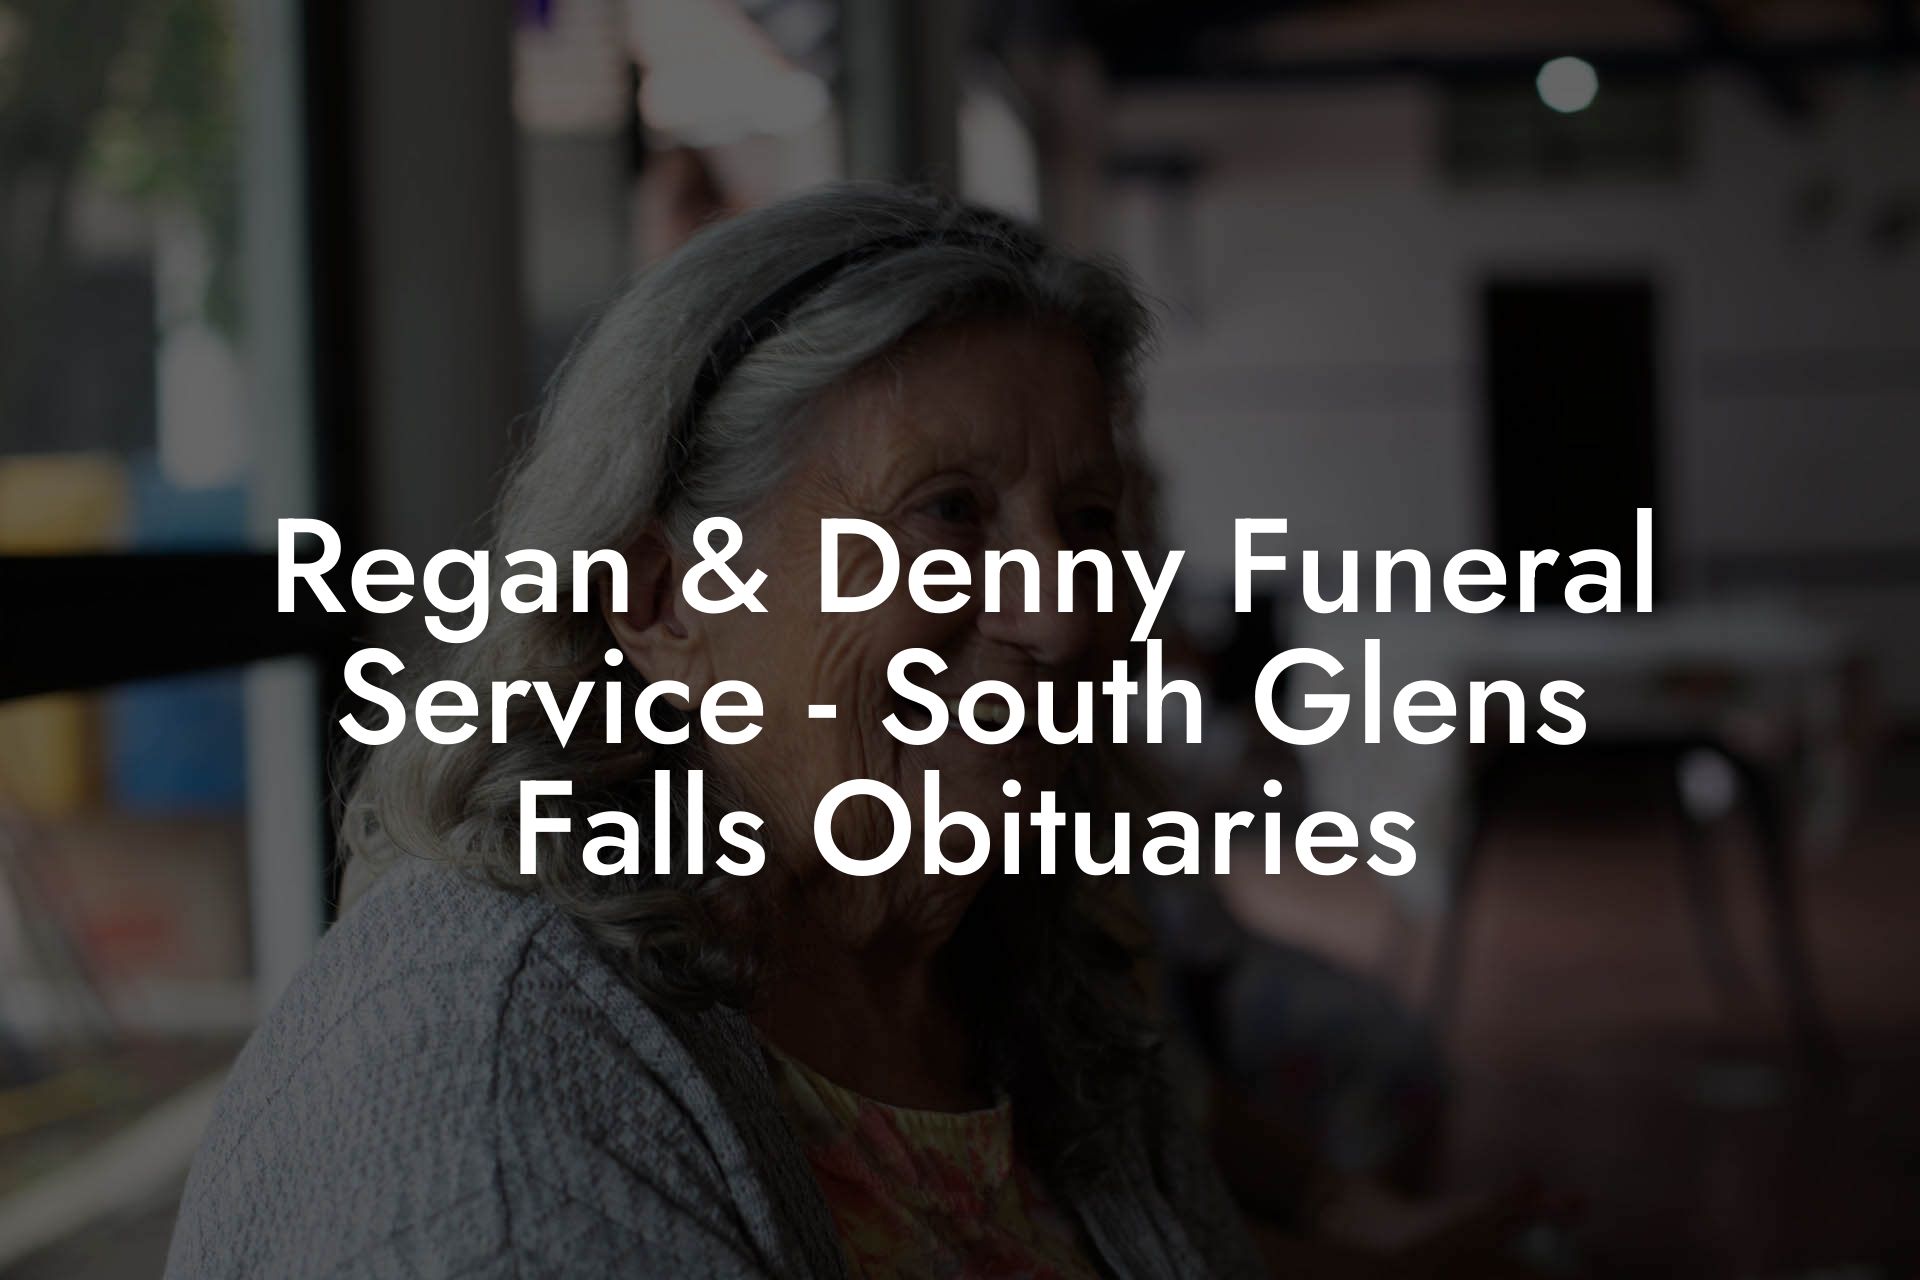 Regan & Denny Funeral Service - South Glens Falls Obituaries